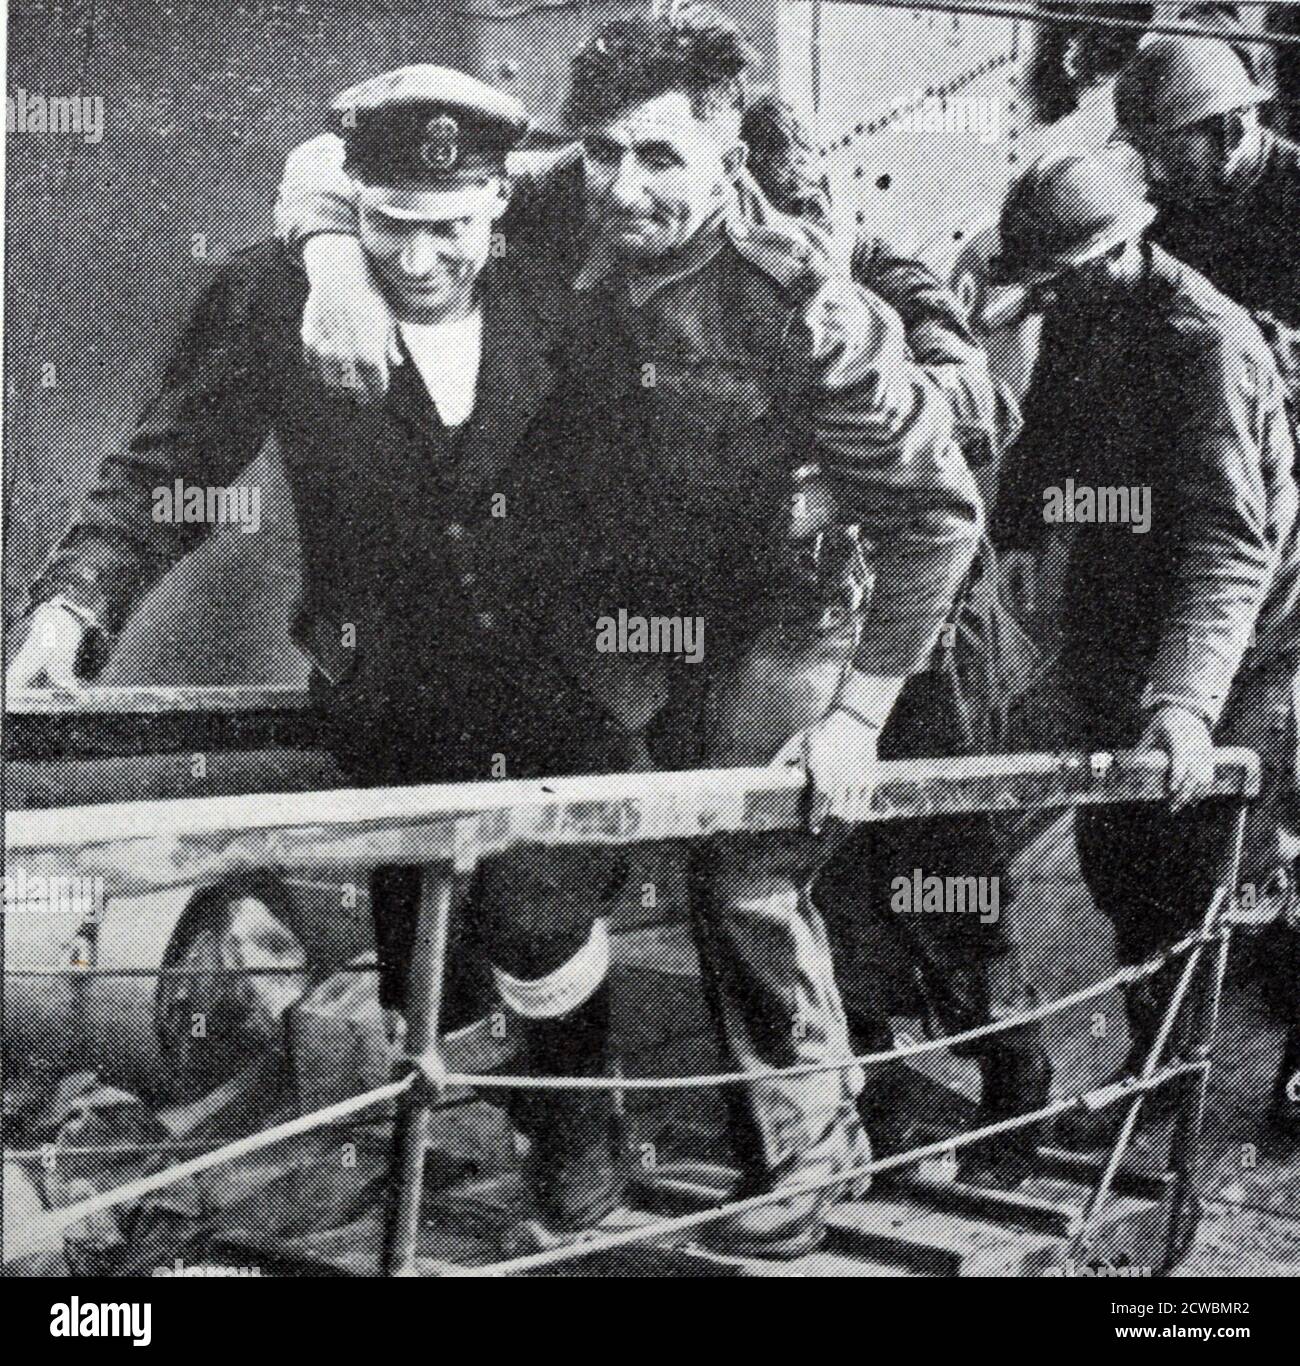 Photographie en noir et blanc de la bataille de France, mai-juin 1940; des soldats évacués de Dunkerque débarquent en Angleterre. Banque D'Images